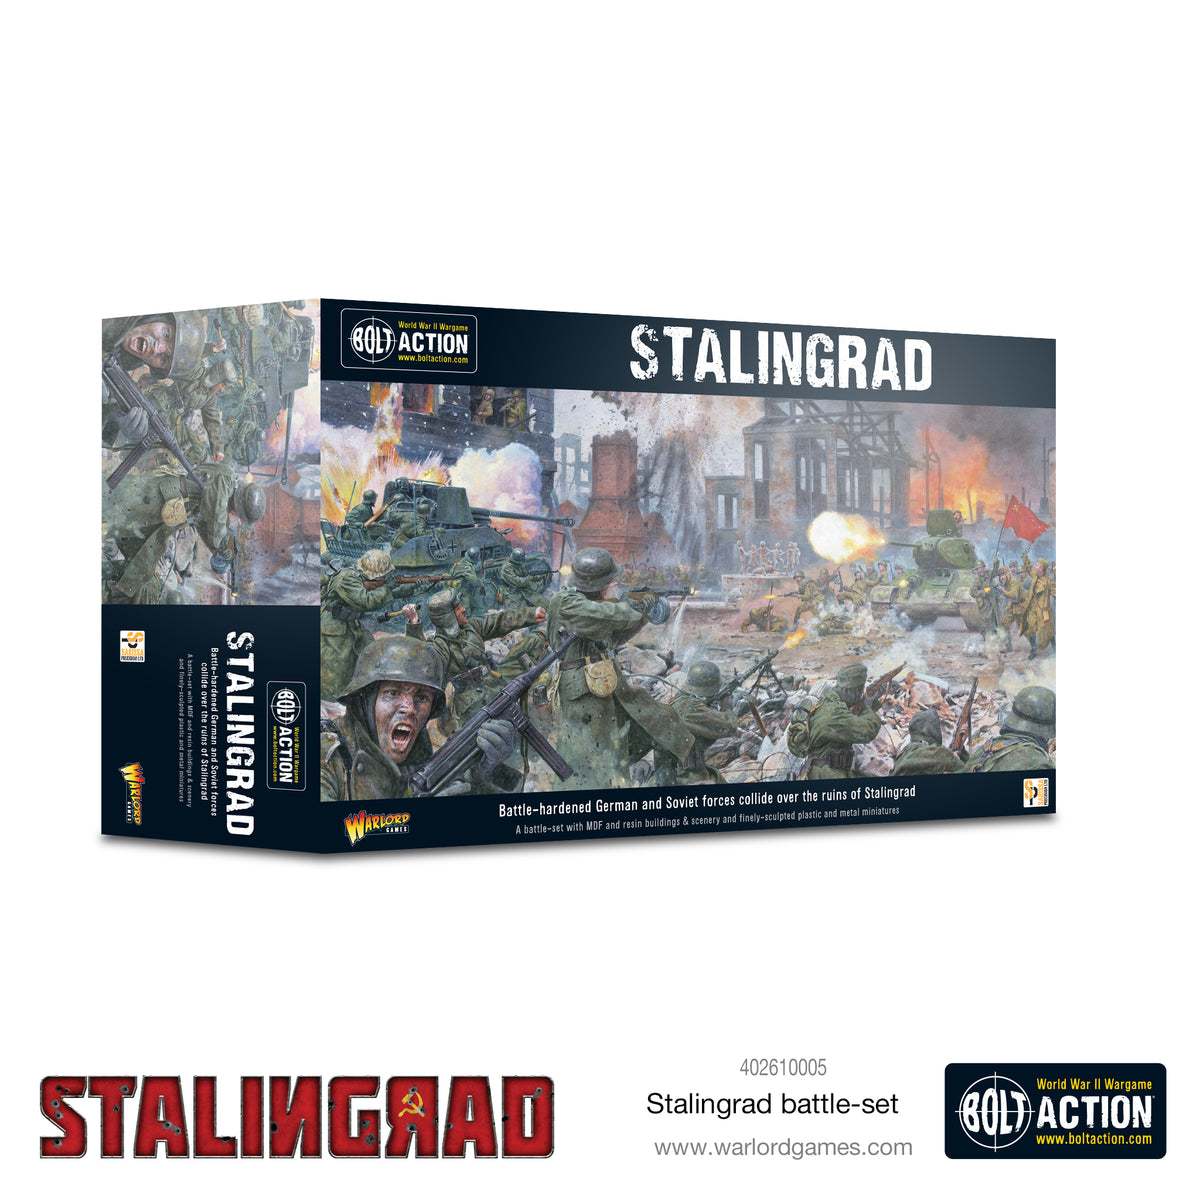 Stalingrad battle-set